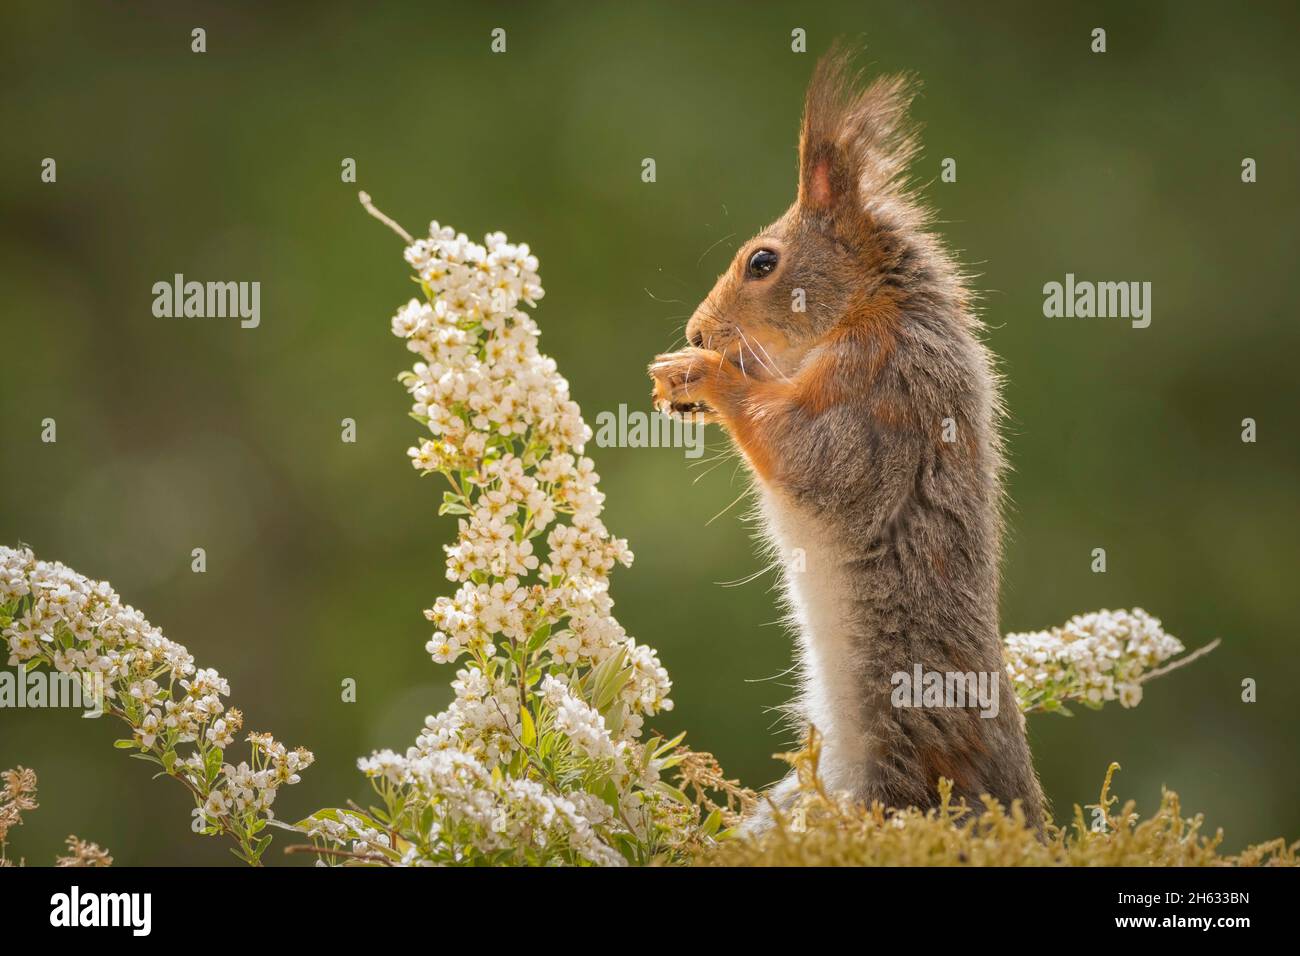 Nahaufnahme des roten Eichhörnchens, das gerade mit Blumen steht Stockfoto